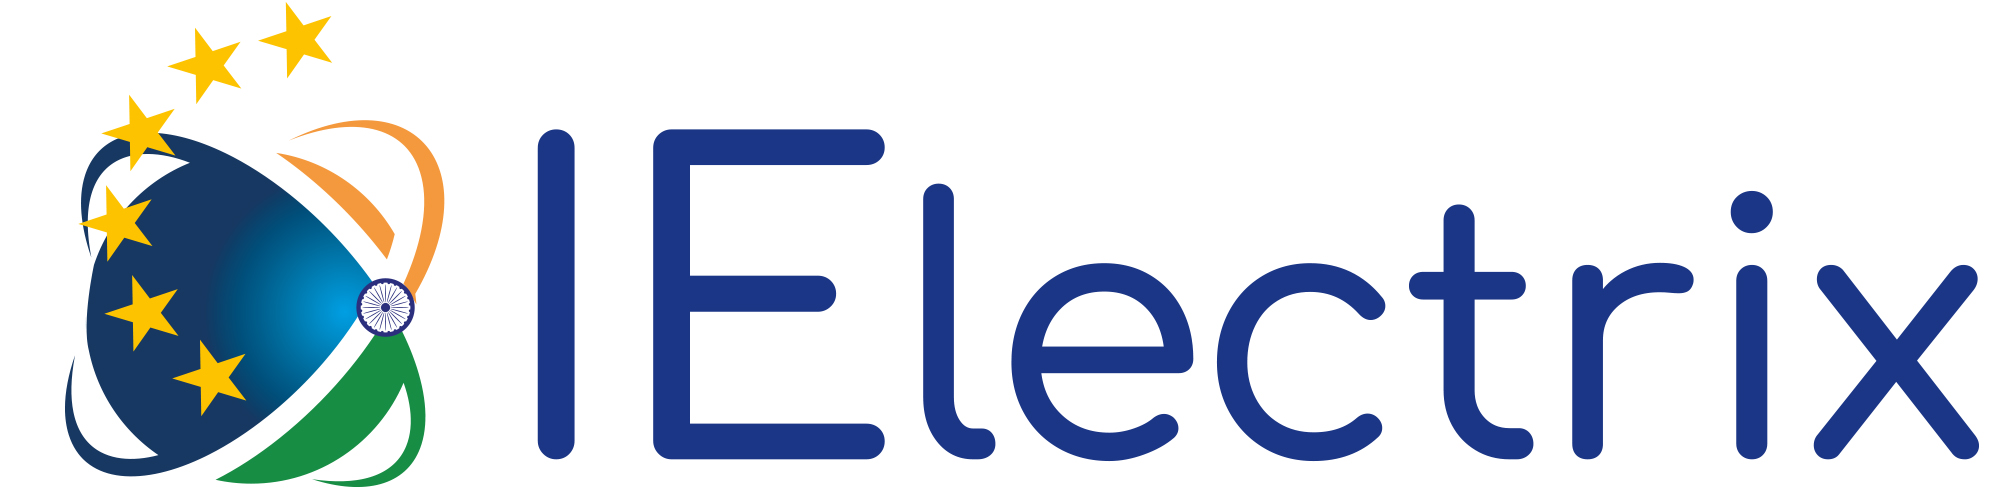 IElectrix logo def copie